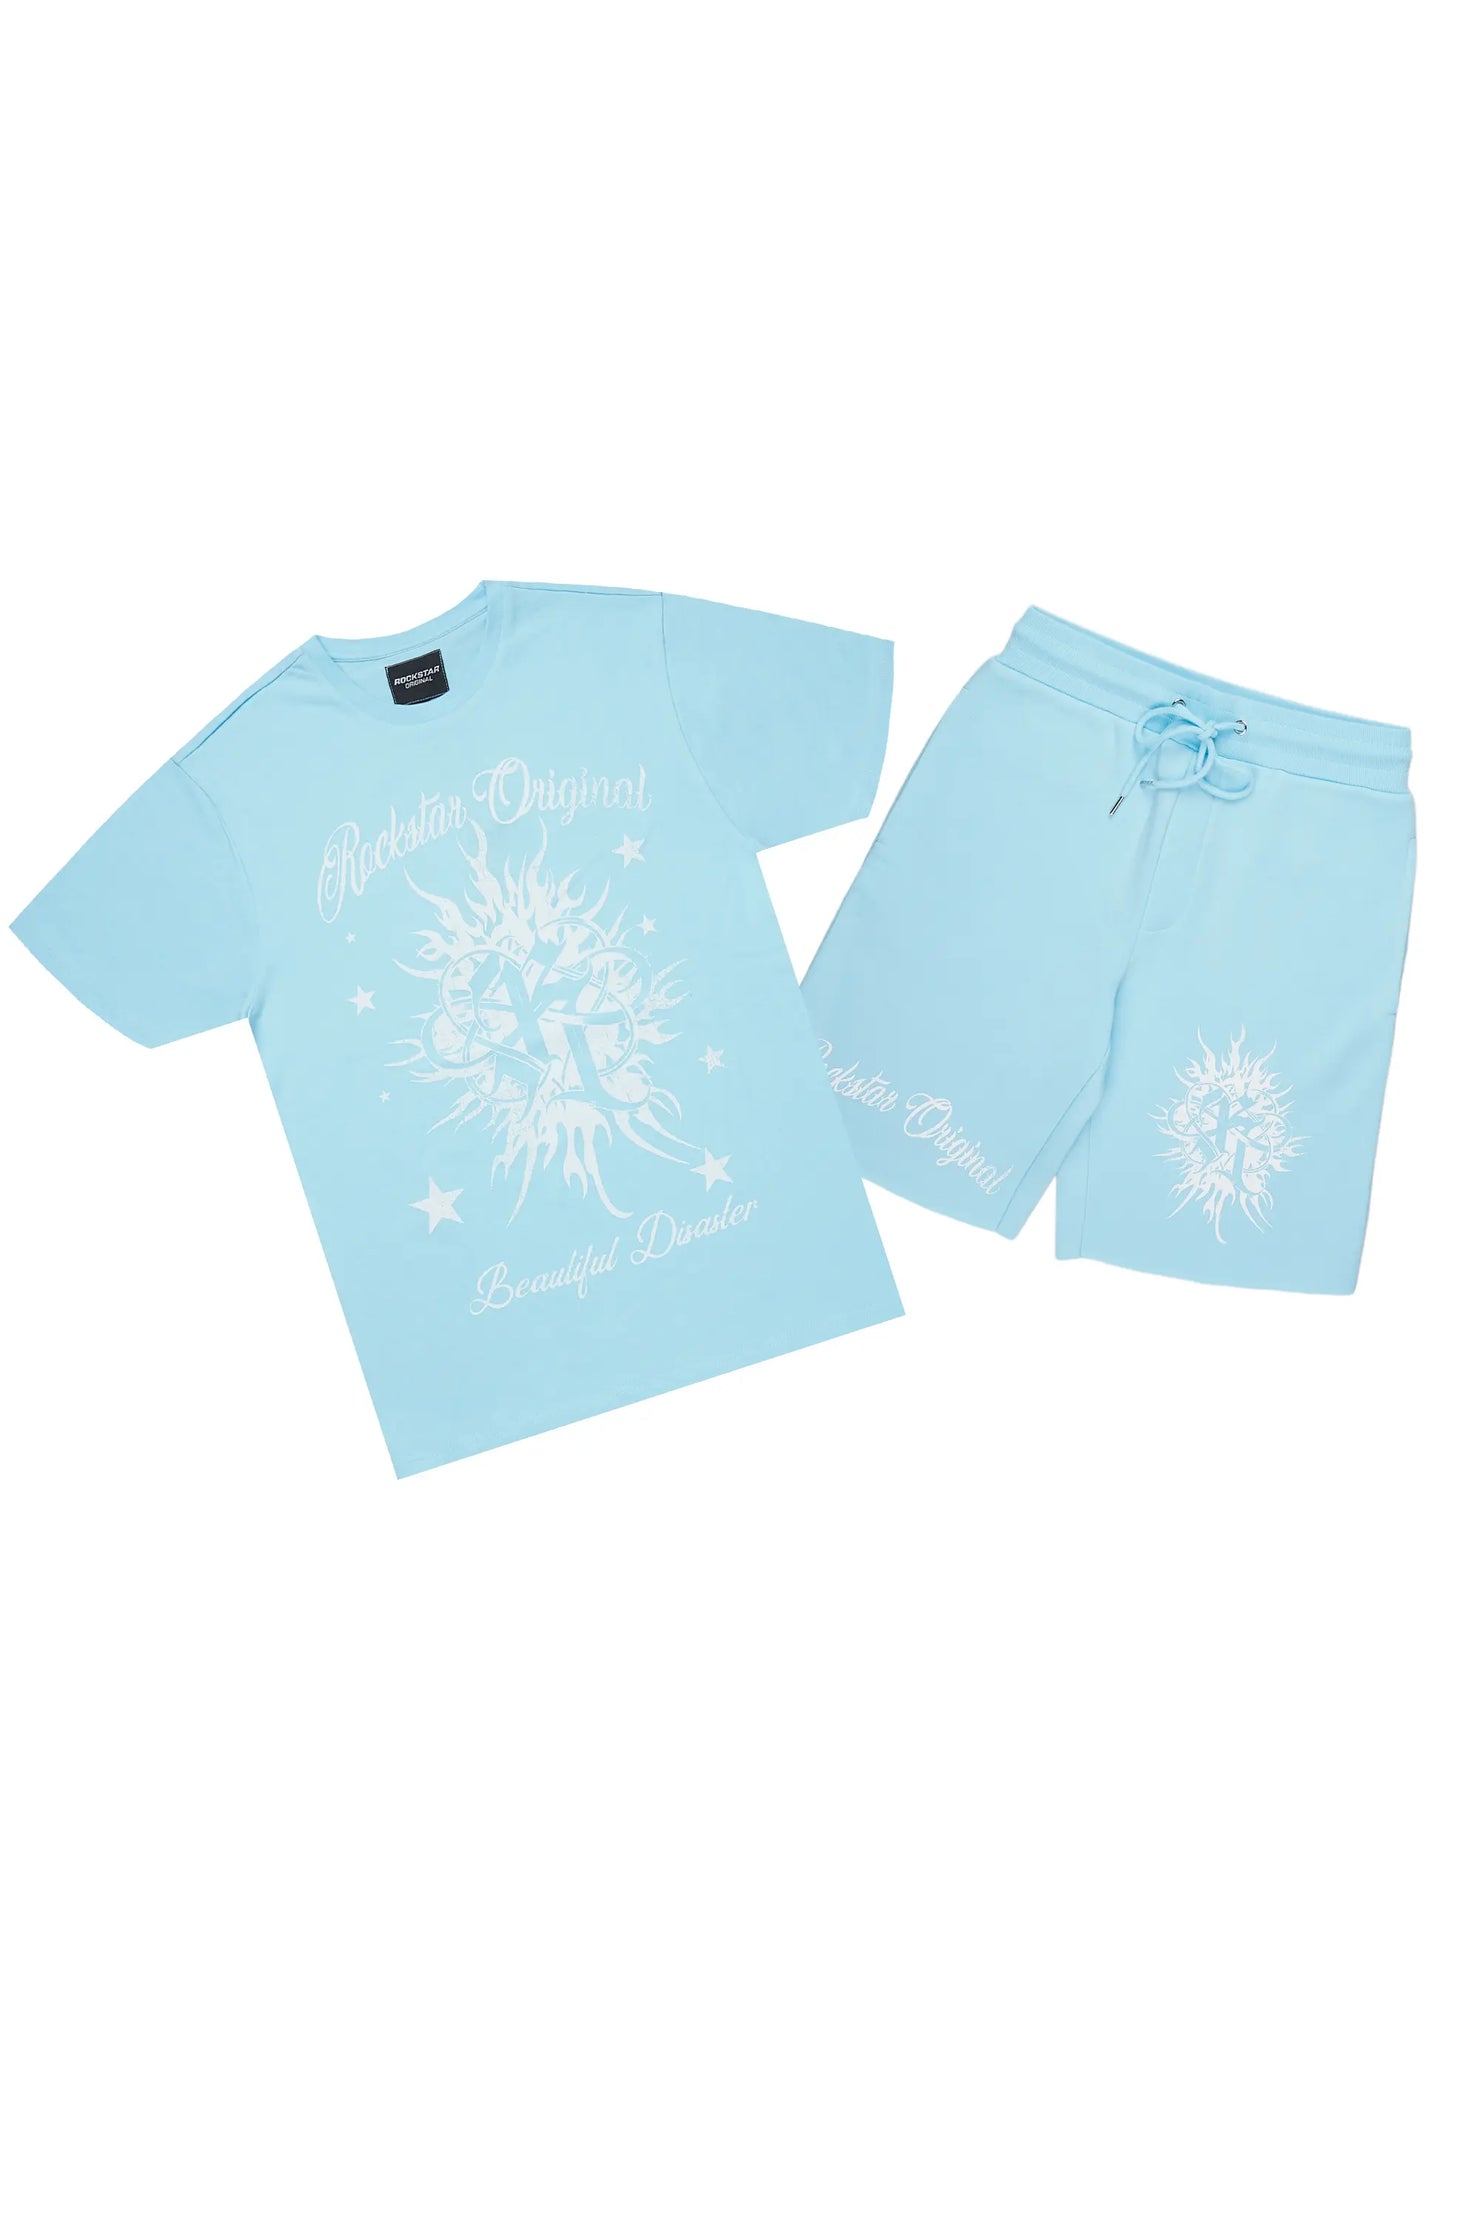 Spiral Baby Blue T-Shirt Short Set